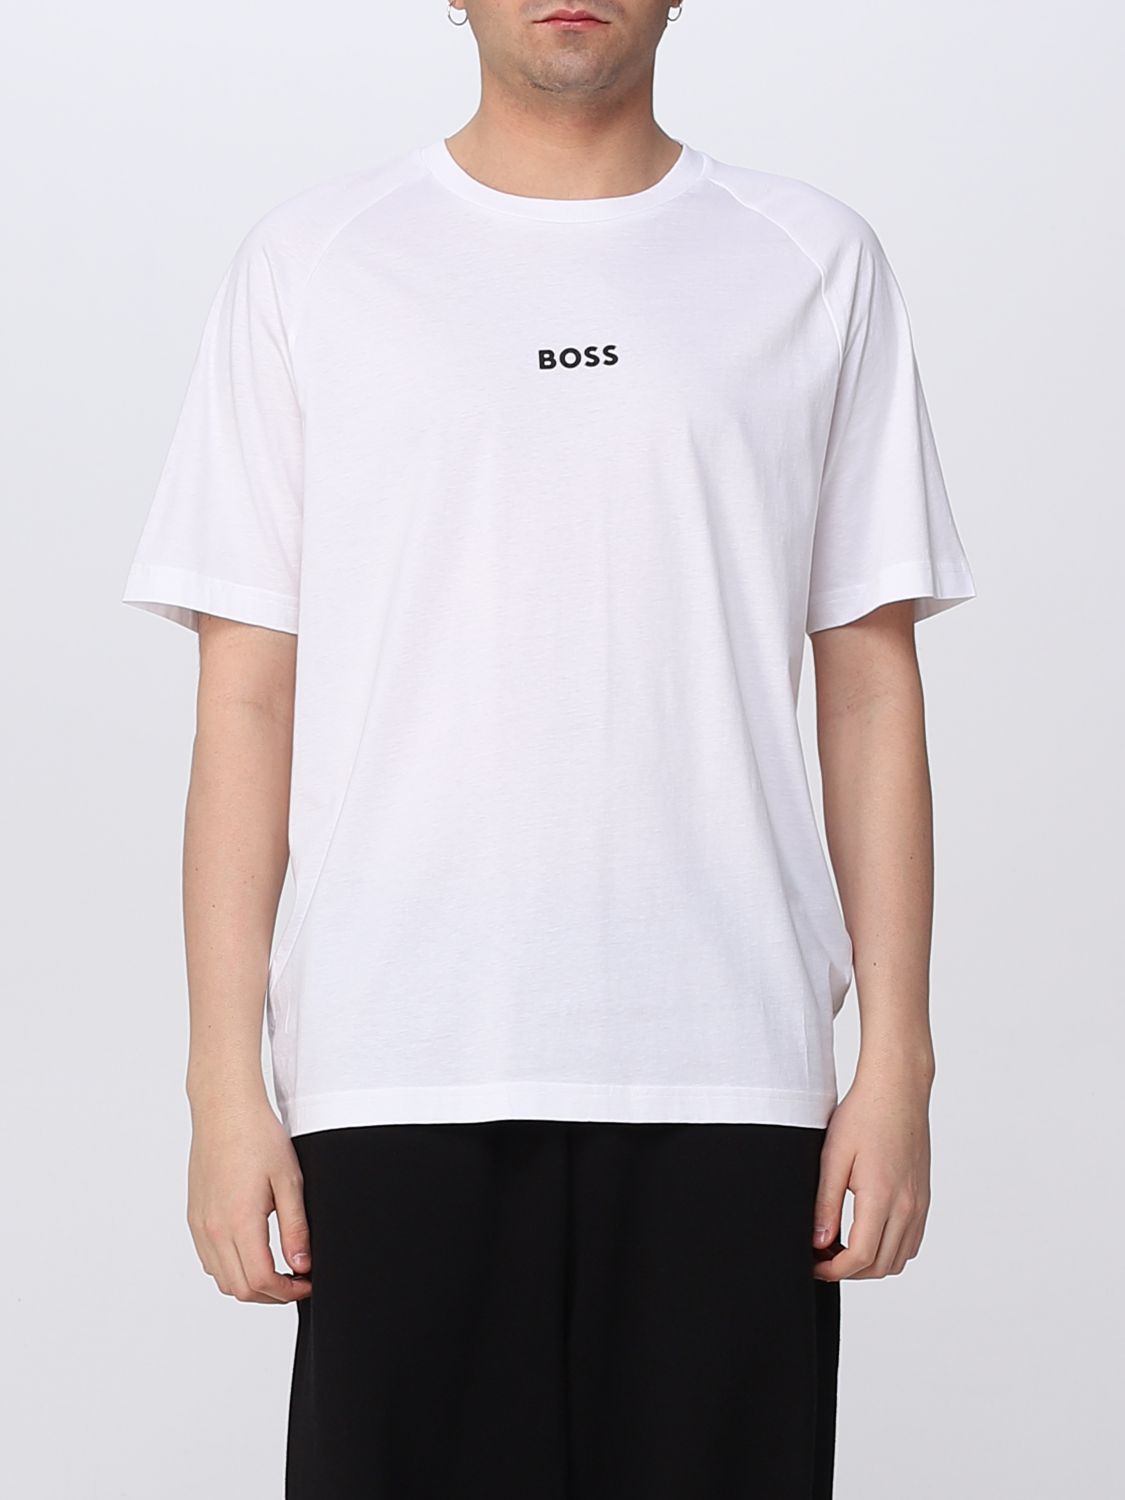 BOSS: t-shirt for man - White | Boss t-shirt 50483759 online on GIGLIO.COM